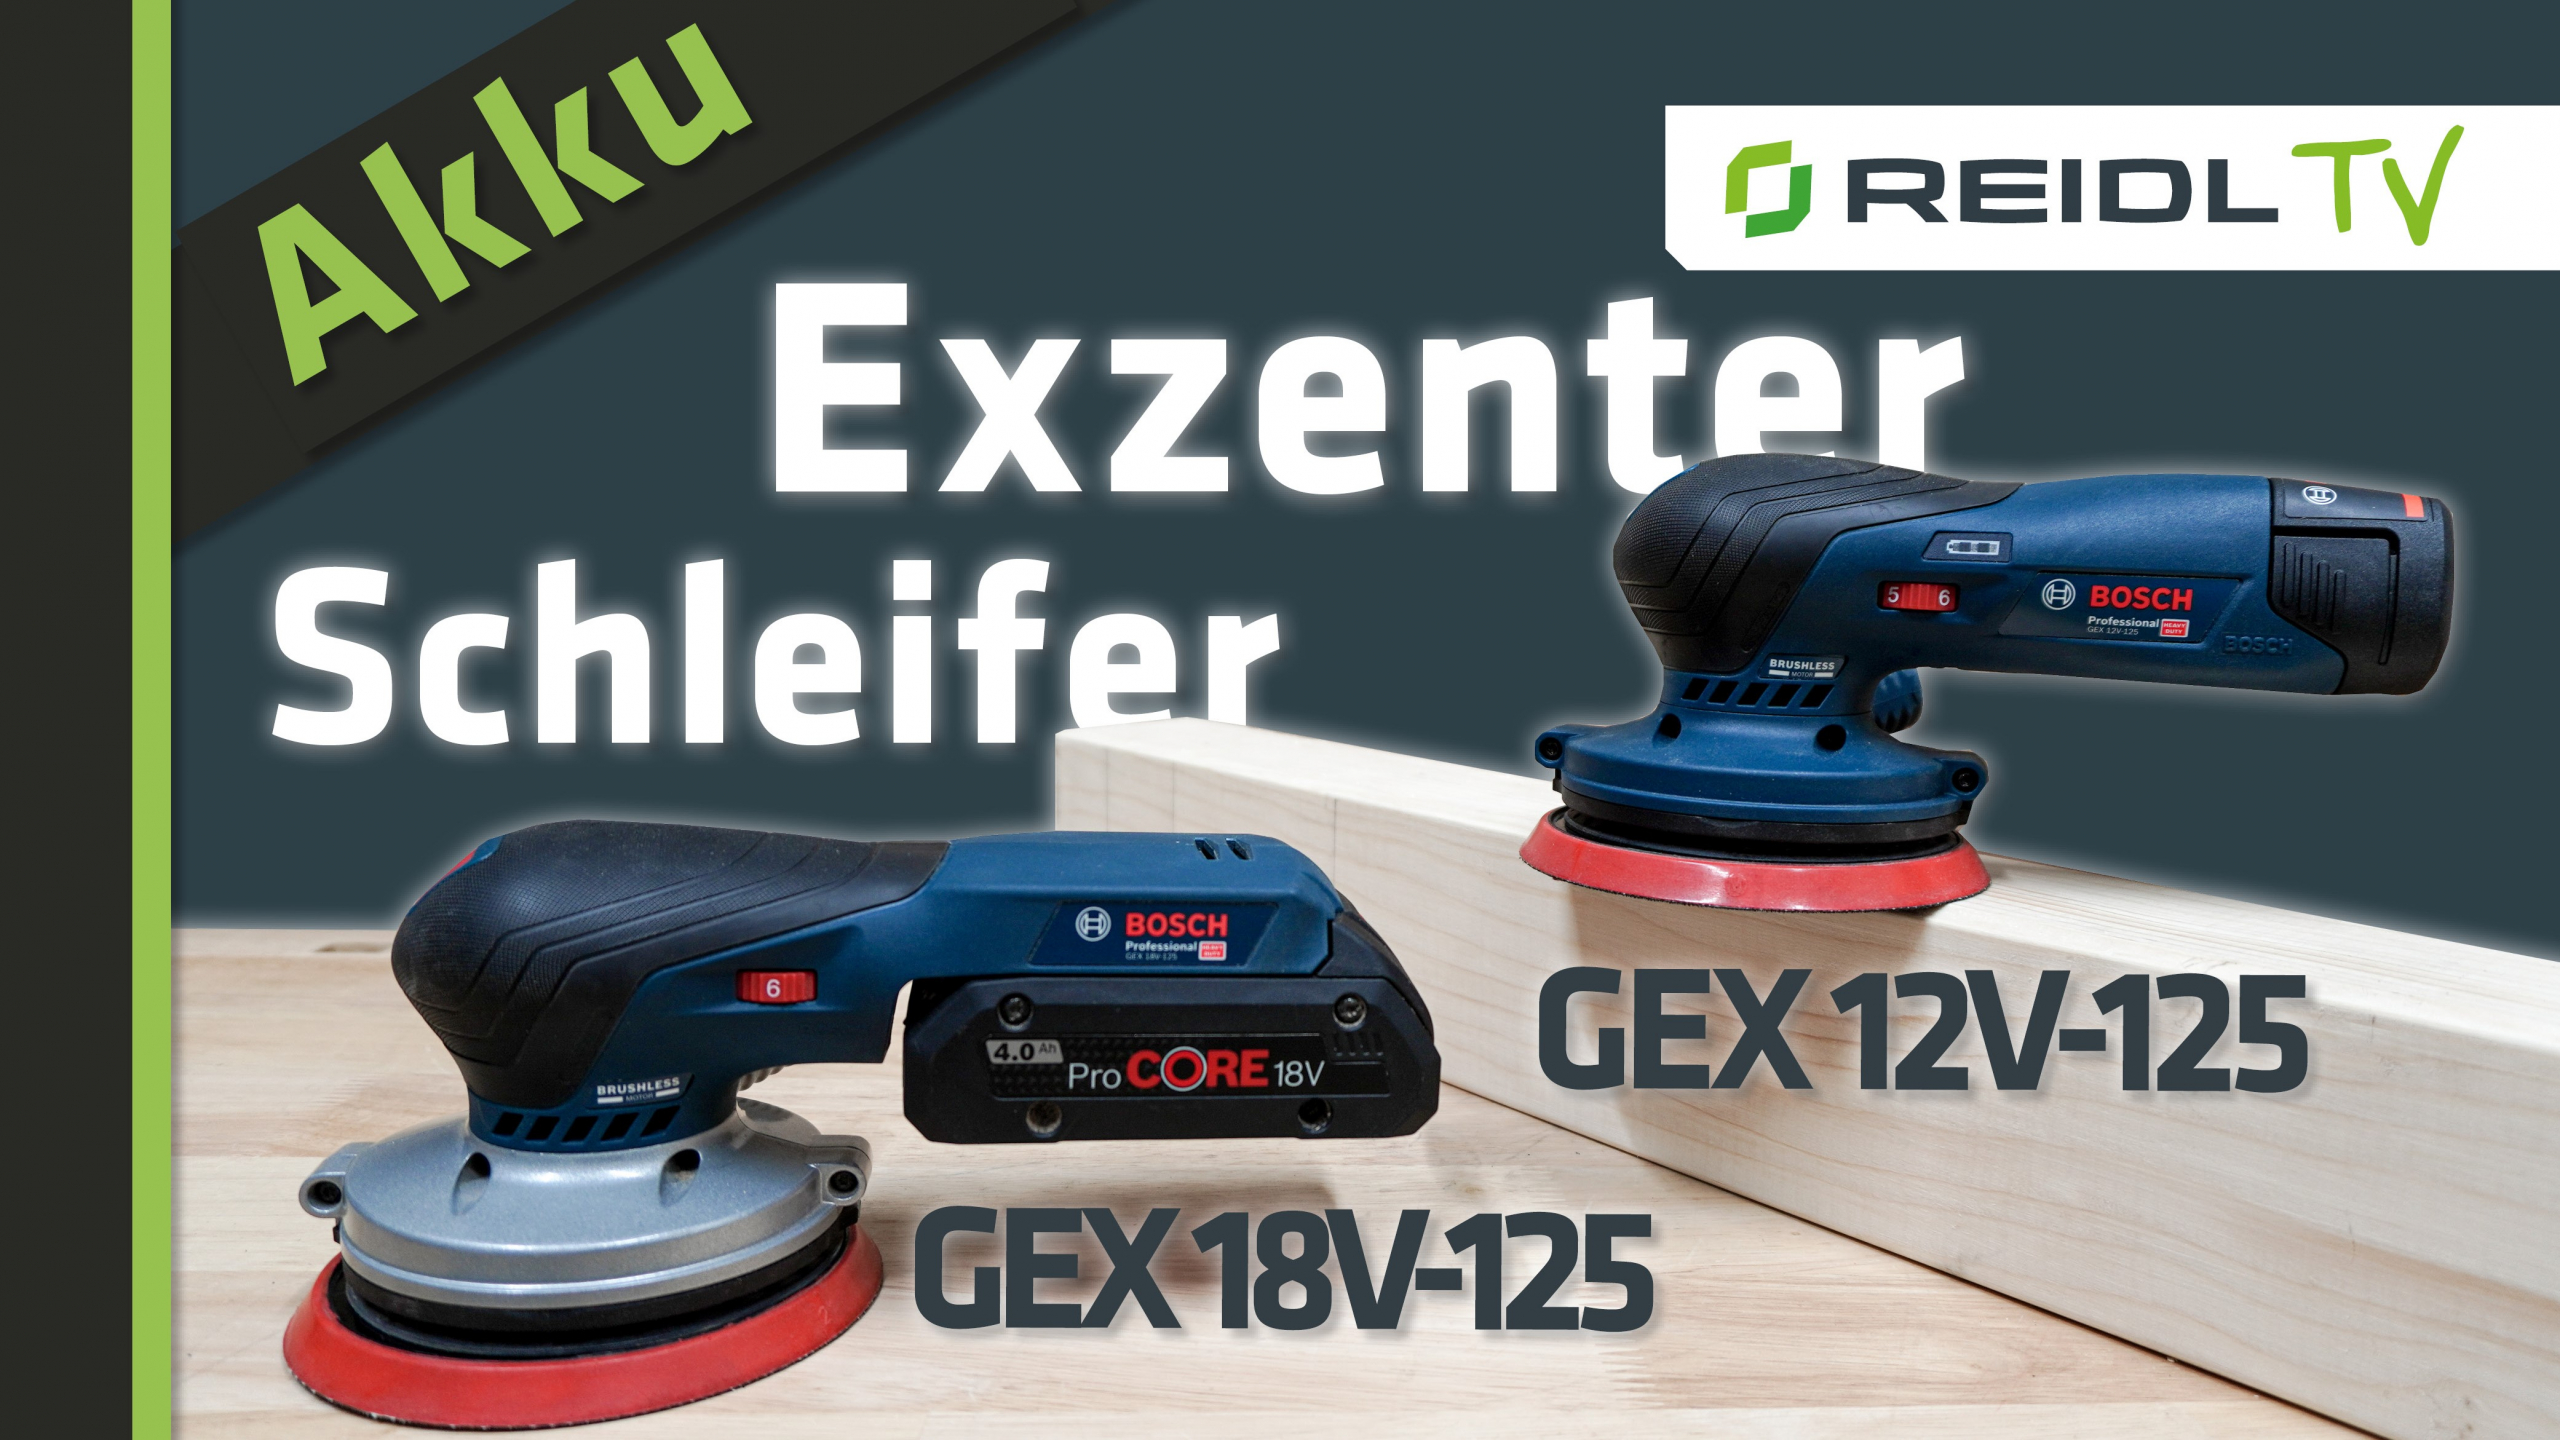 Bosch Akku-Exzenterschleifer GEX 12V-125 und GEX 18V-125